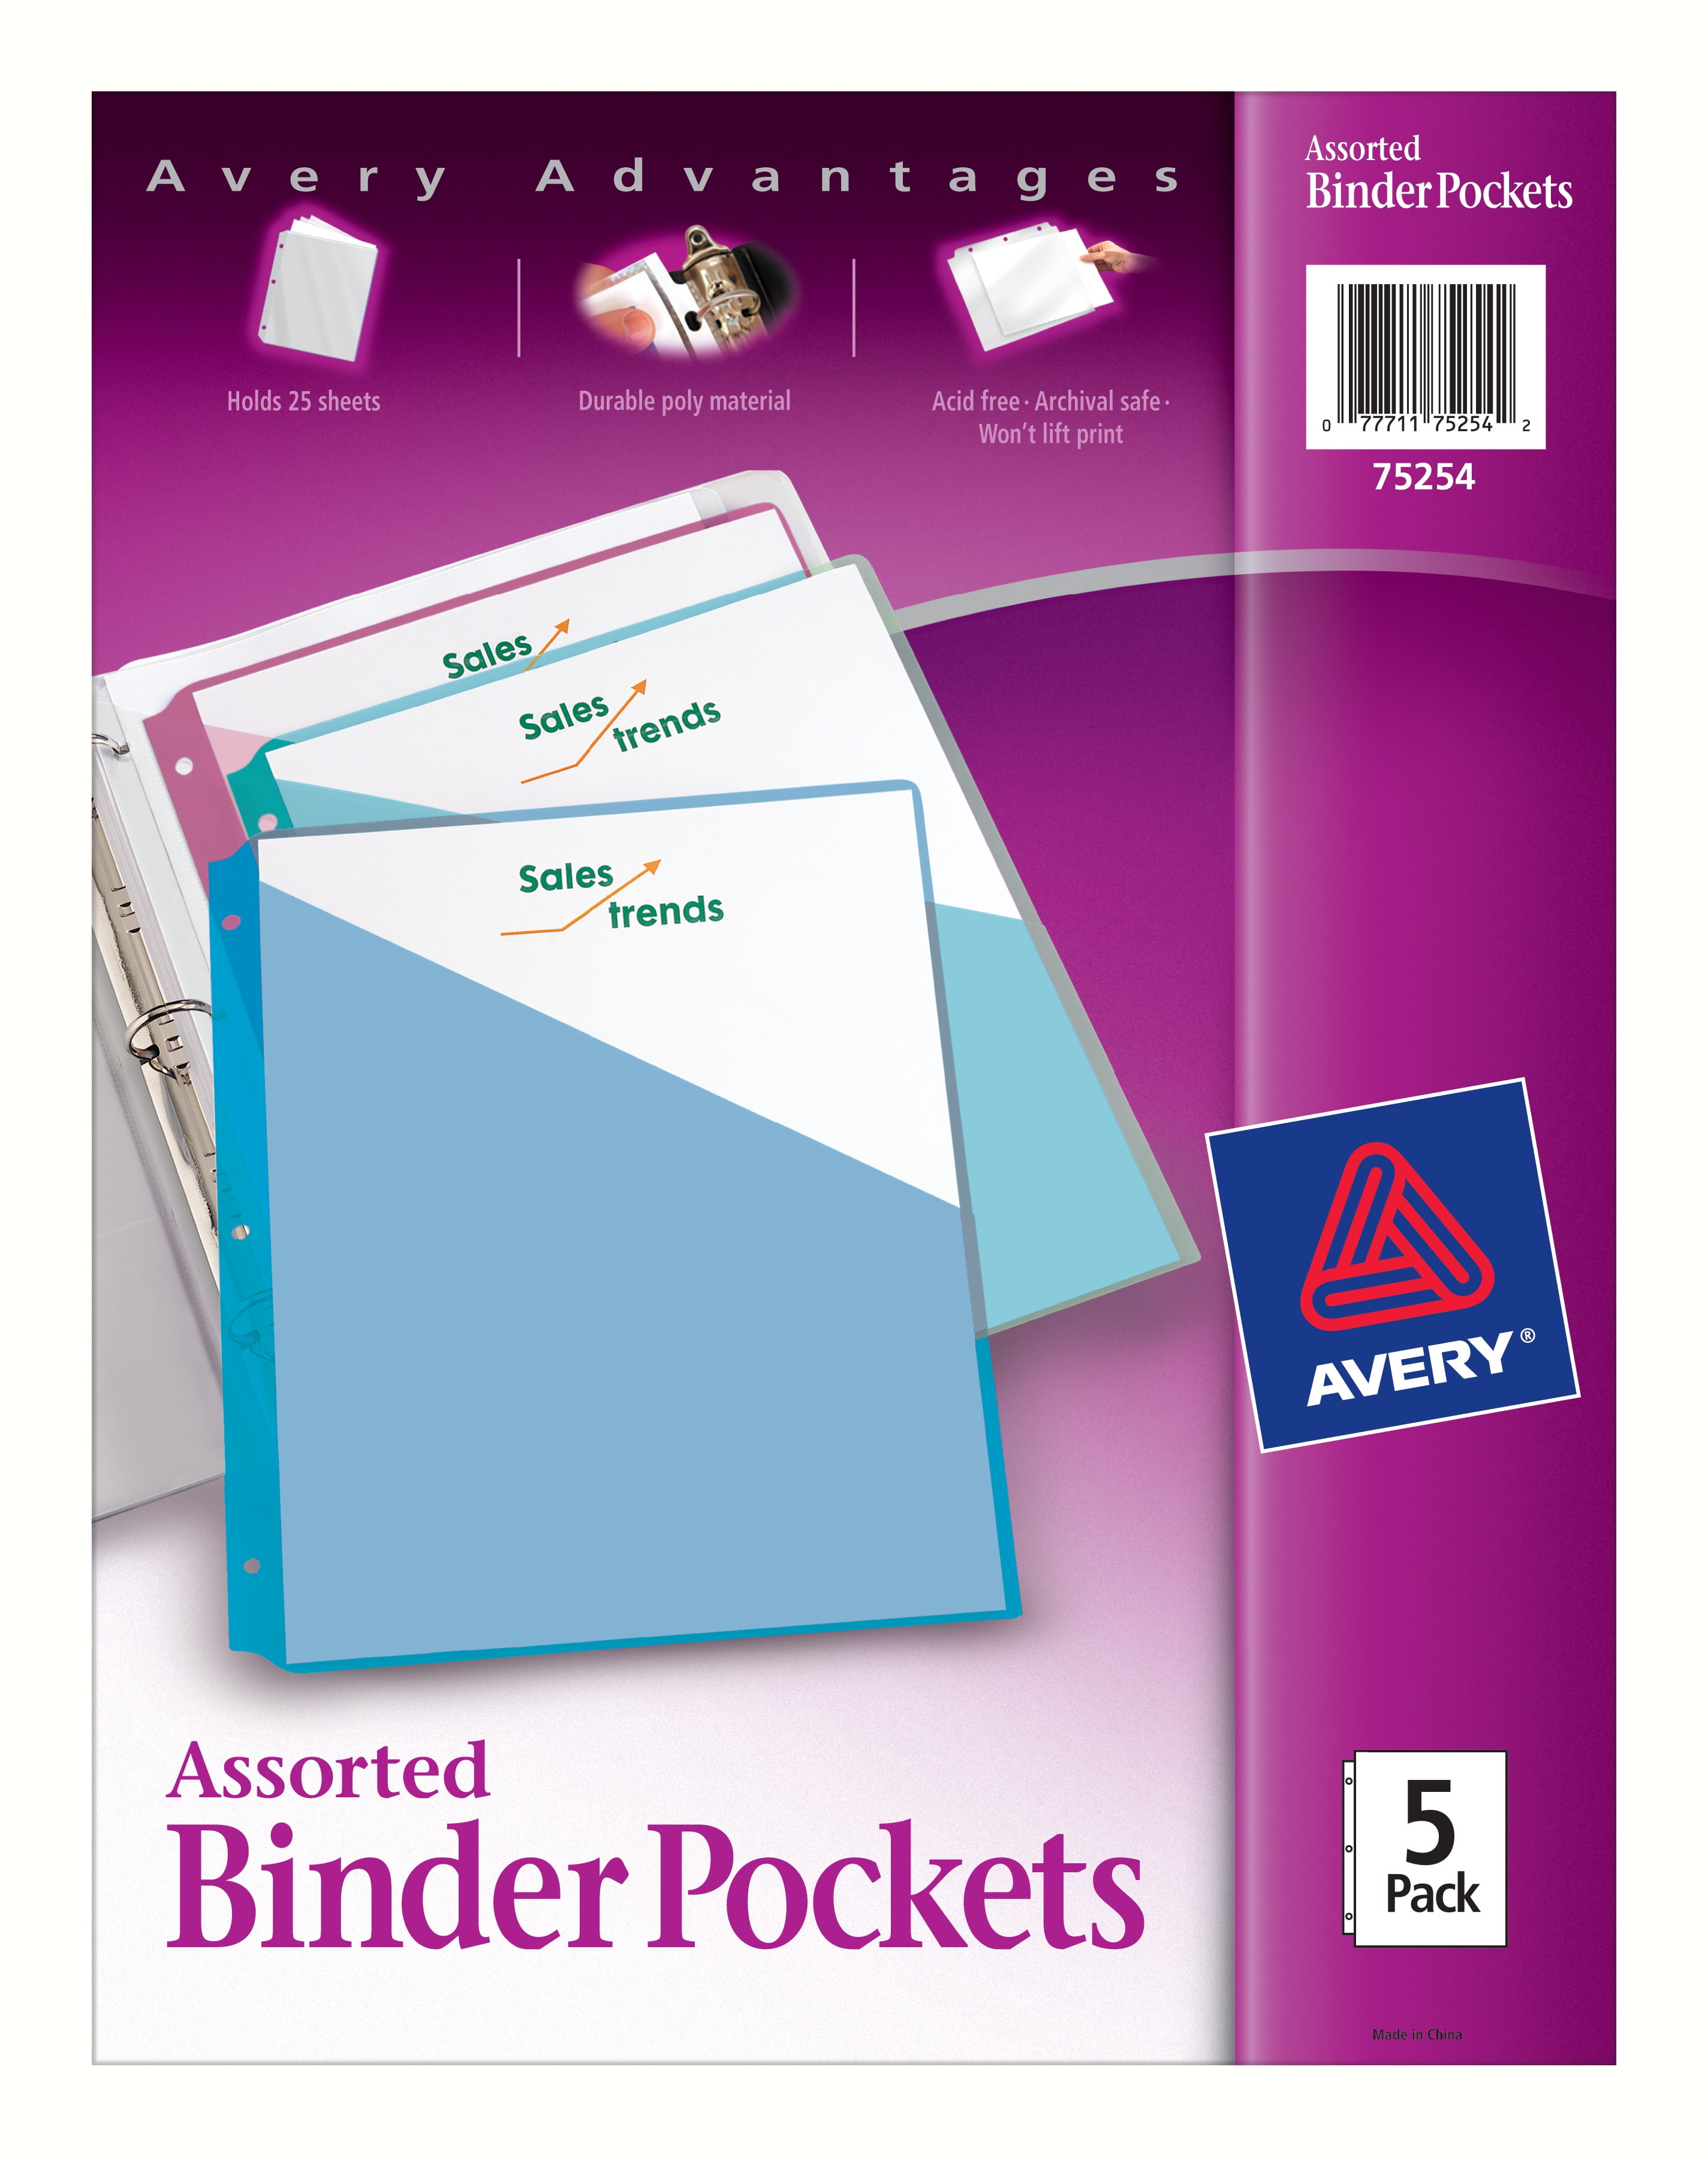 Willen Beer Verbazing Avery Binder Pockets, Assorted Colors, Pack of 5 (75244) - Walmart.com